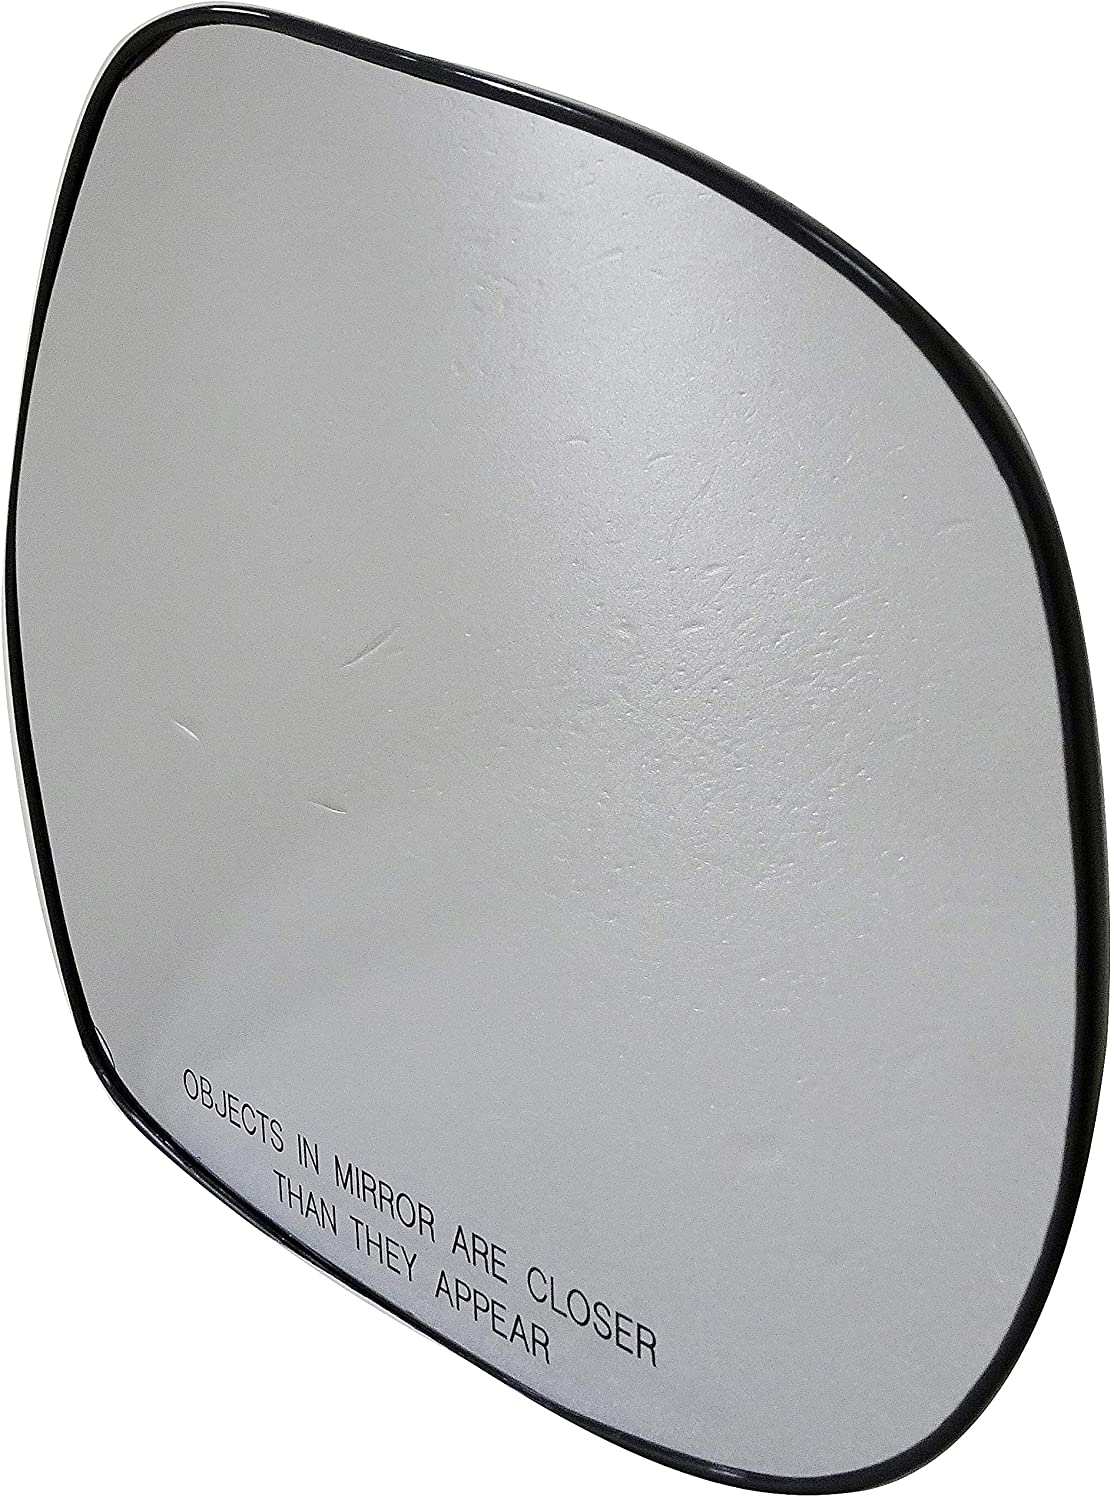 Dorman 56412 Lexus GX 470 Passenger Side Heated Plastic Backed Door Mirror Glass